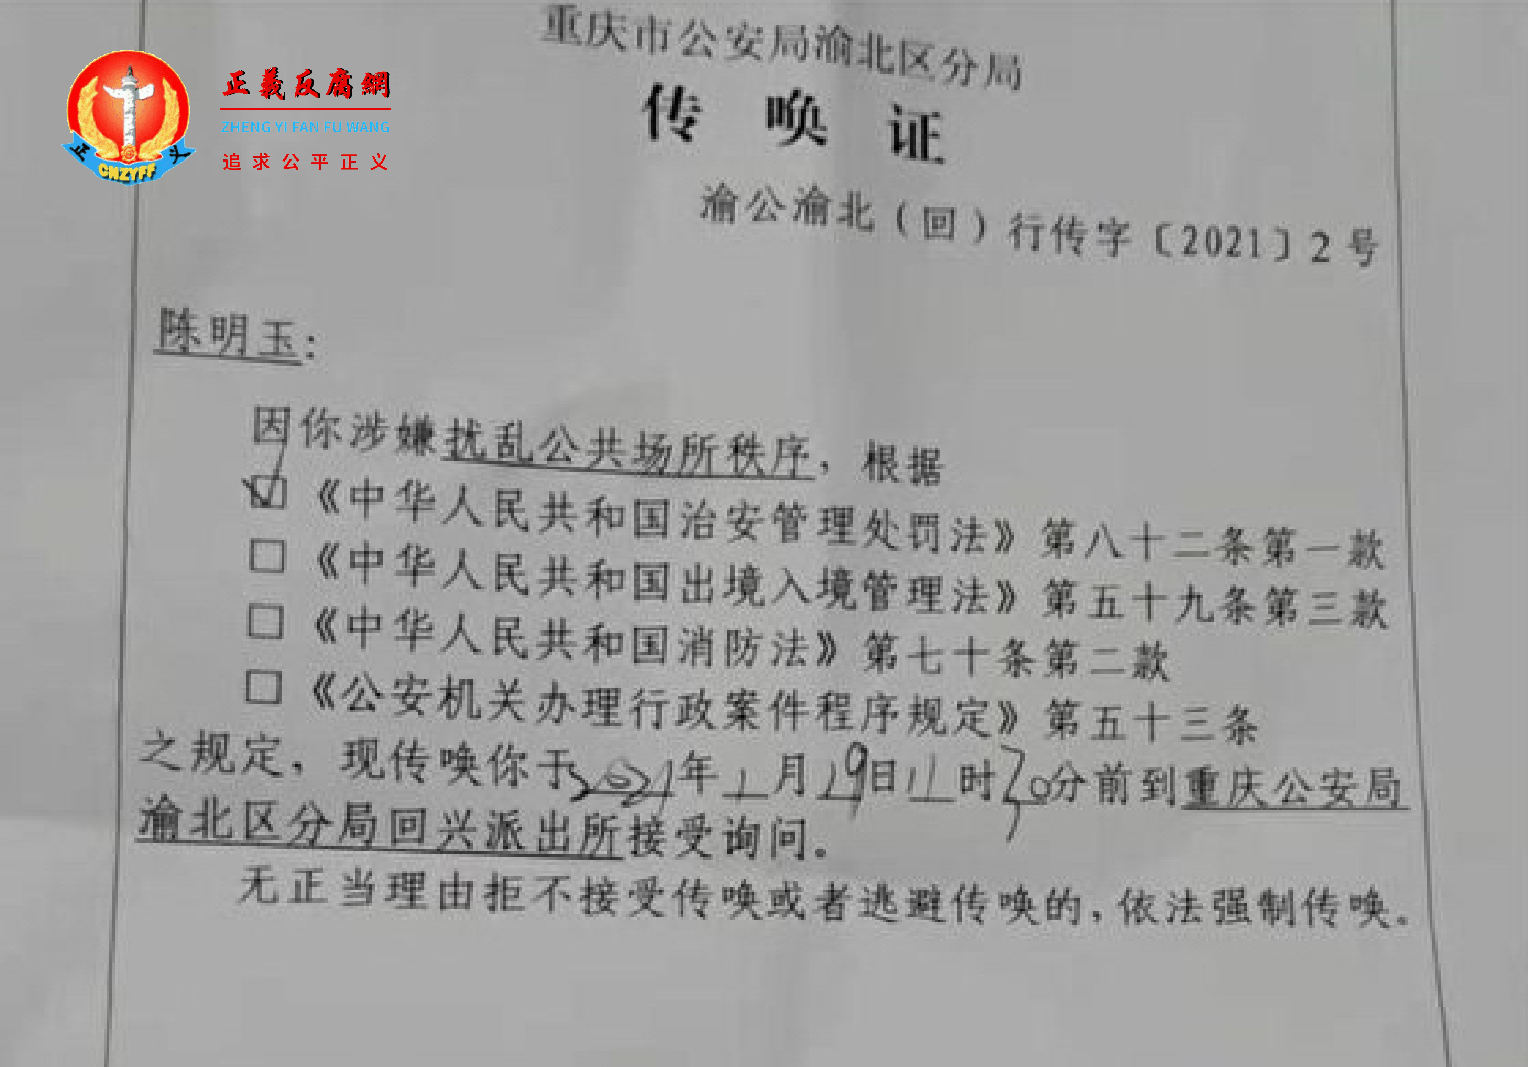 重庆两会前 维权人士被传唤坐刑椅审讯8小时